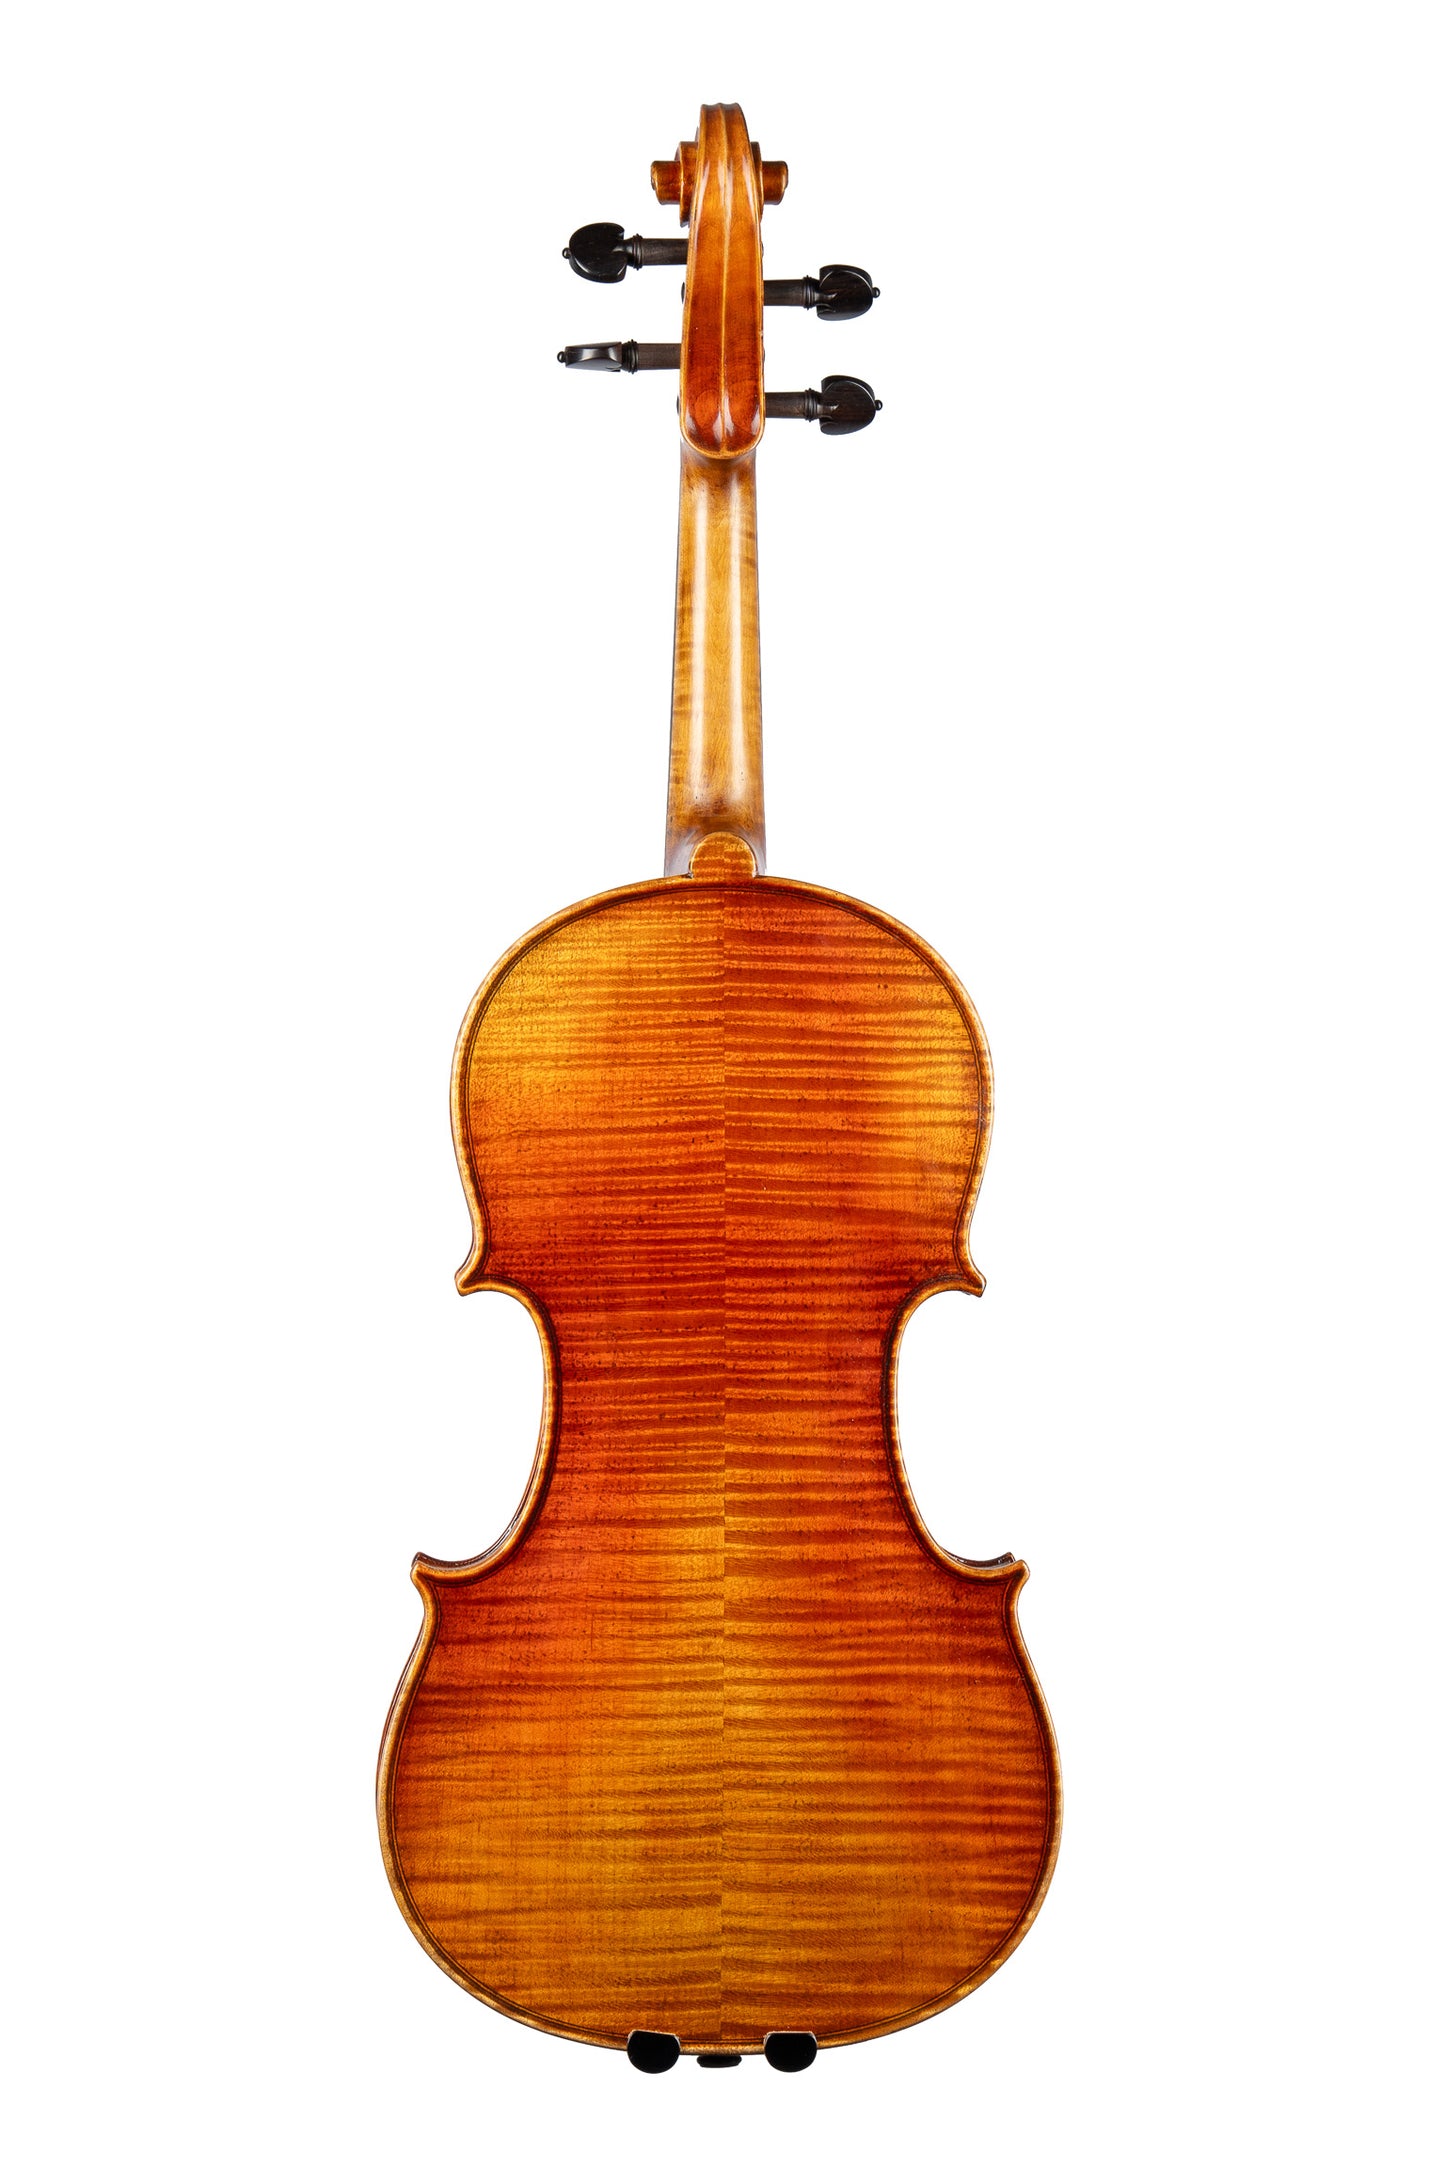 BL-500 Viola